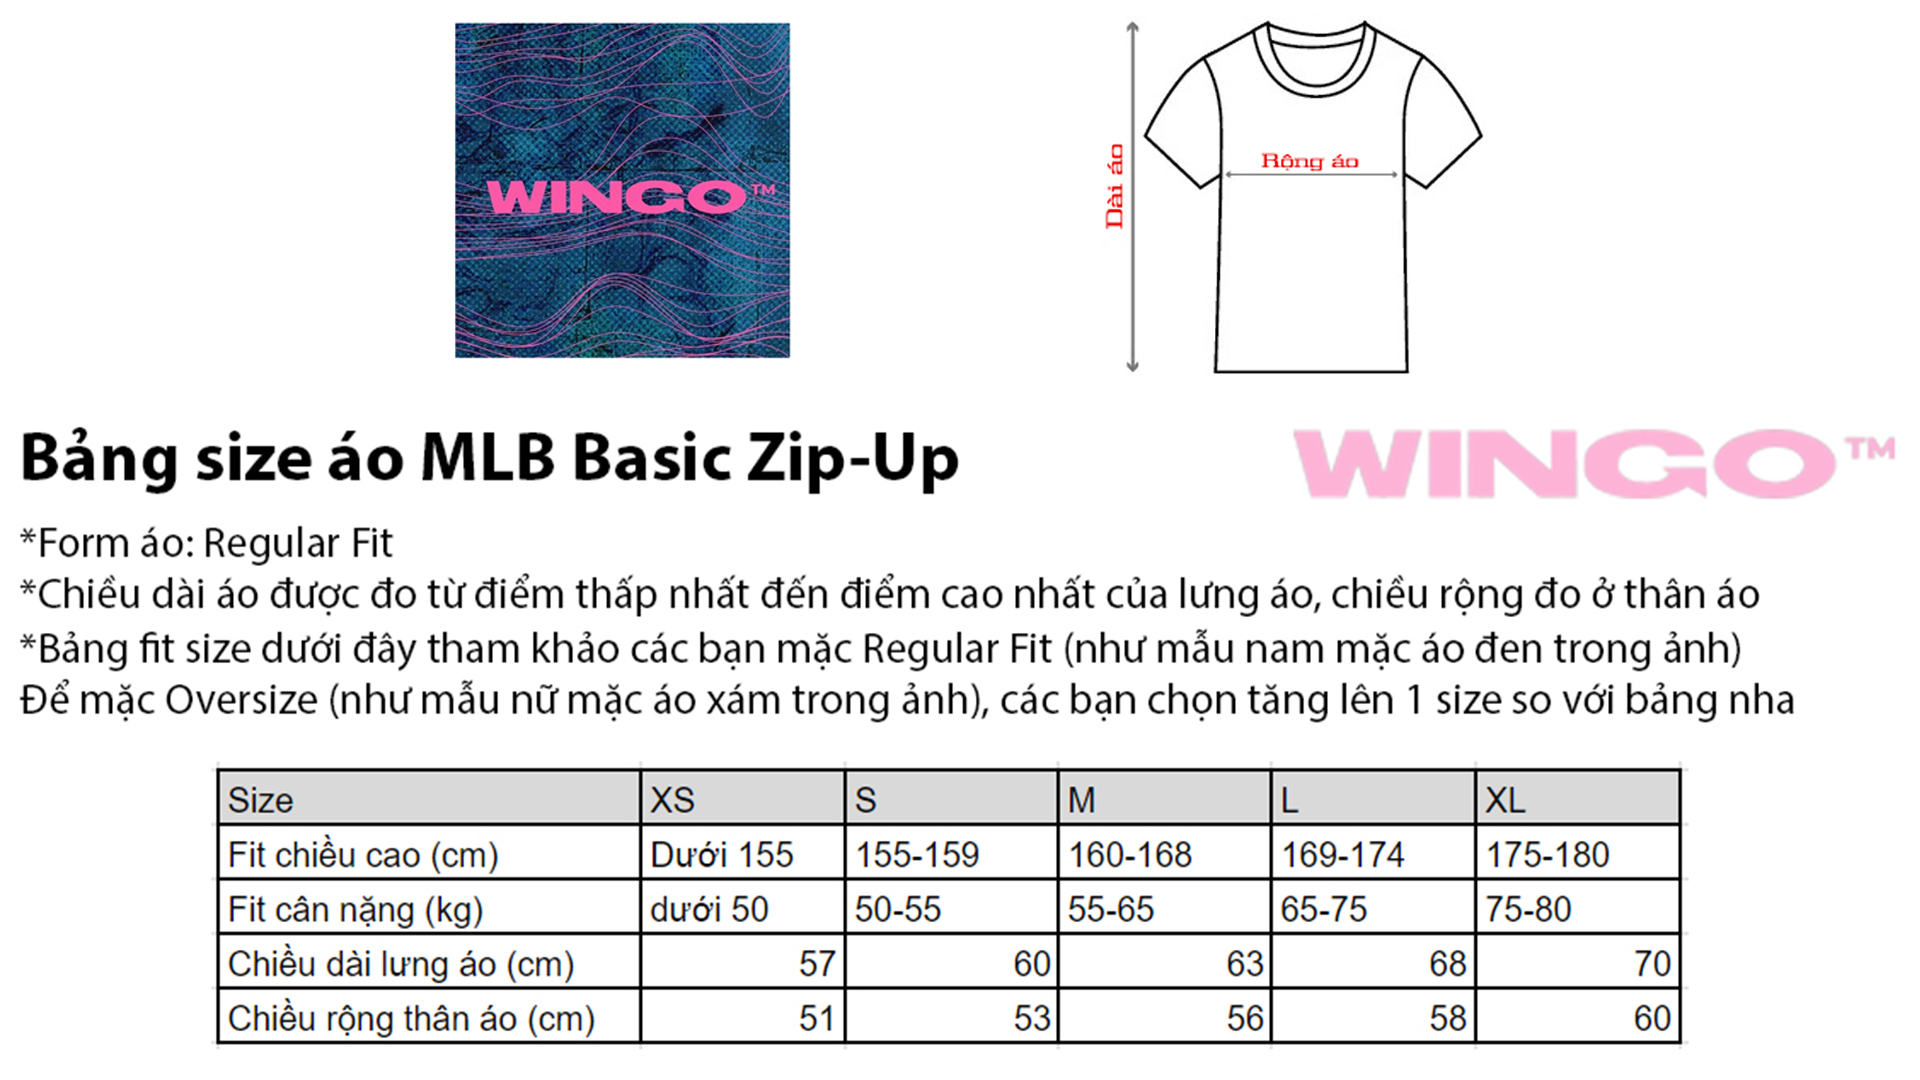 Bang size MLB Zip-Up Regular fit